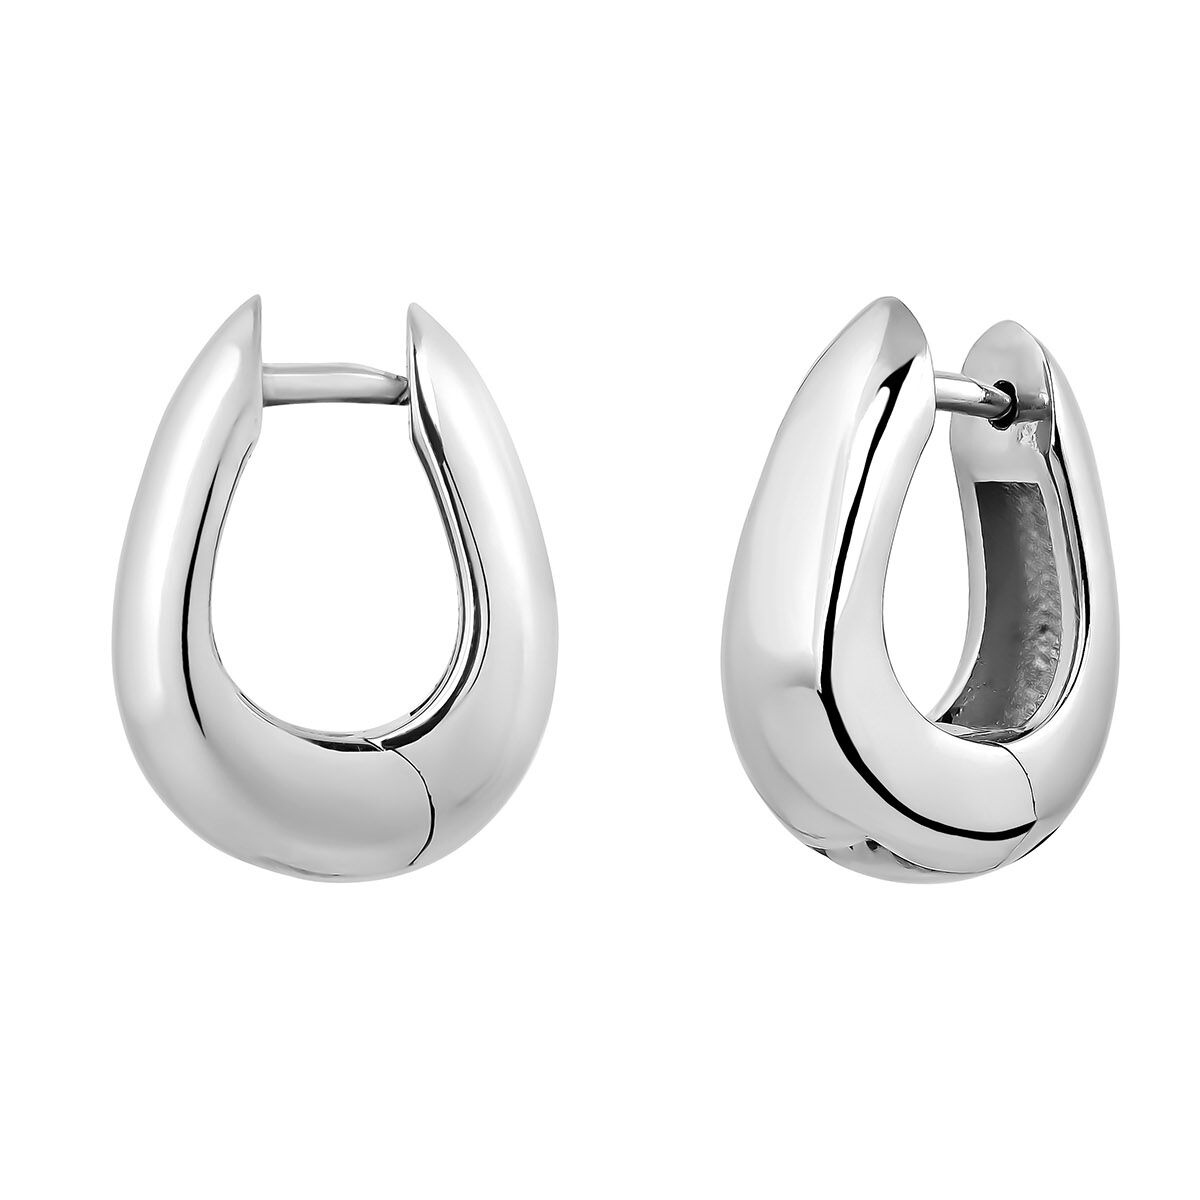 Medium thick oval hoop earrings in silver , J05150-01, hi-res